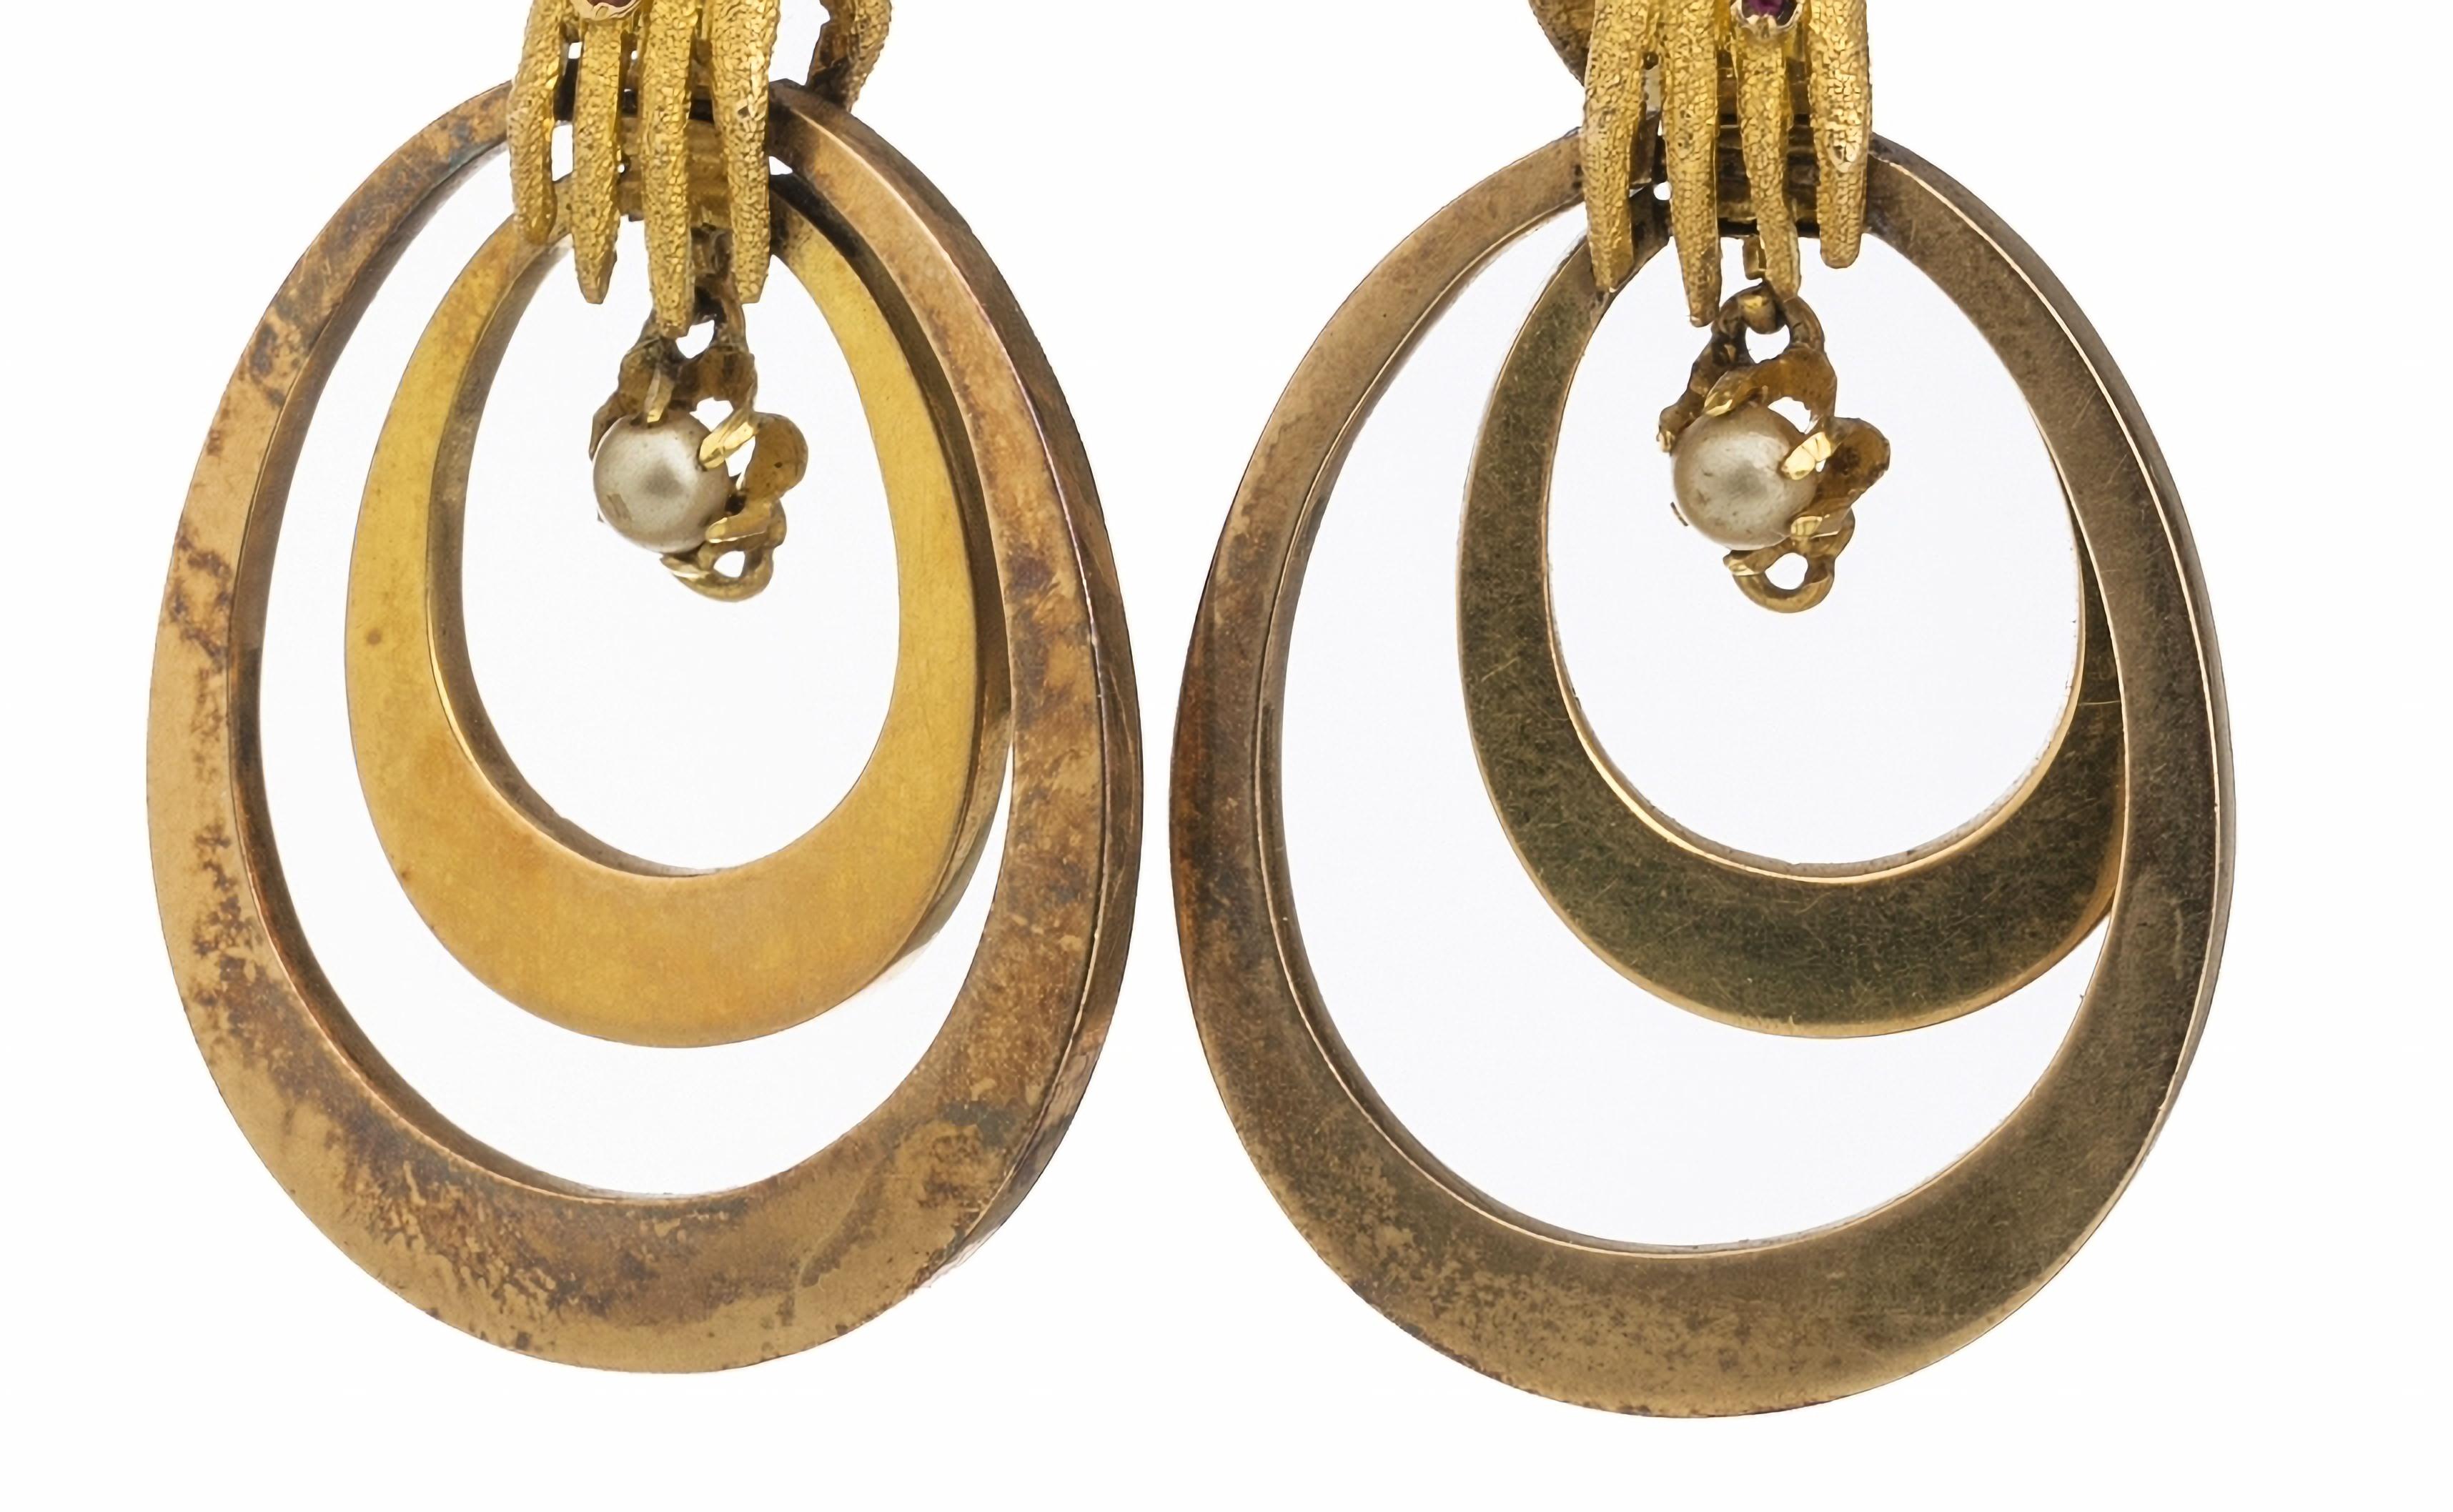 Ohrringe 'Hands' aus Gold
Viktorianisches 19. Jahrhundert, in 18-karätigem Gold, mit gravierter Dekoration und mit Rubinen, Cabochon-Schliff und Mikroperlen besetzt, mit französischem Exportstempel 